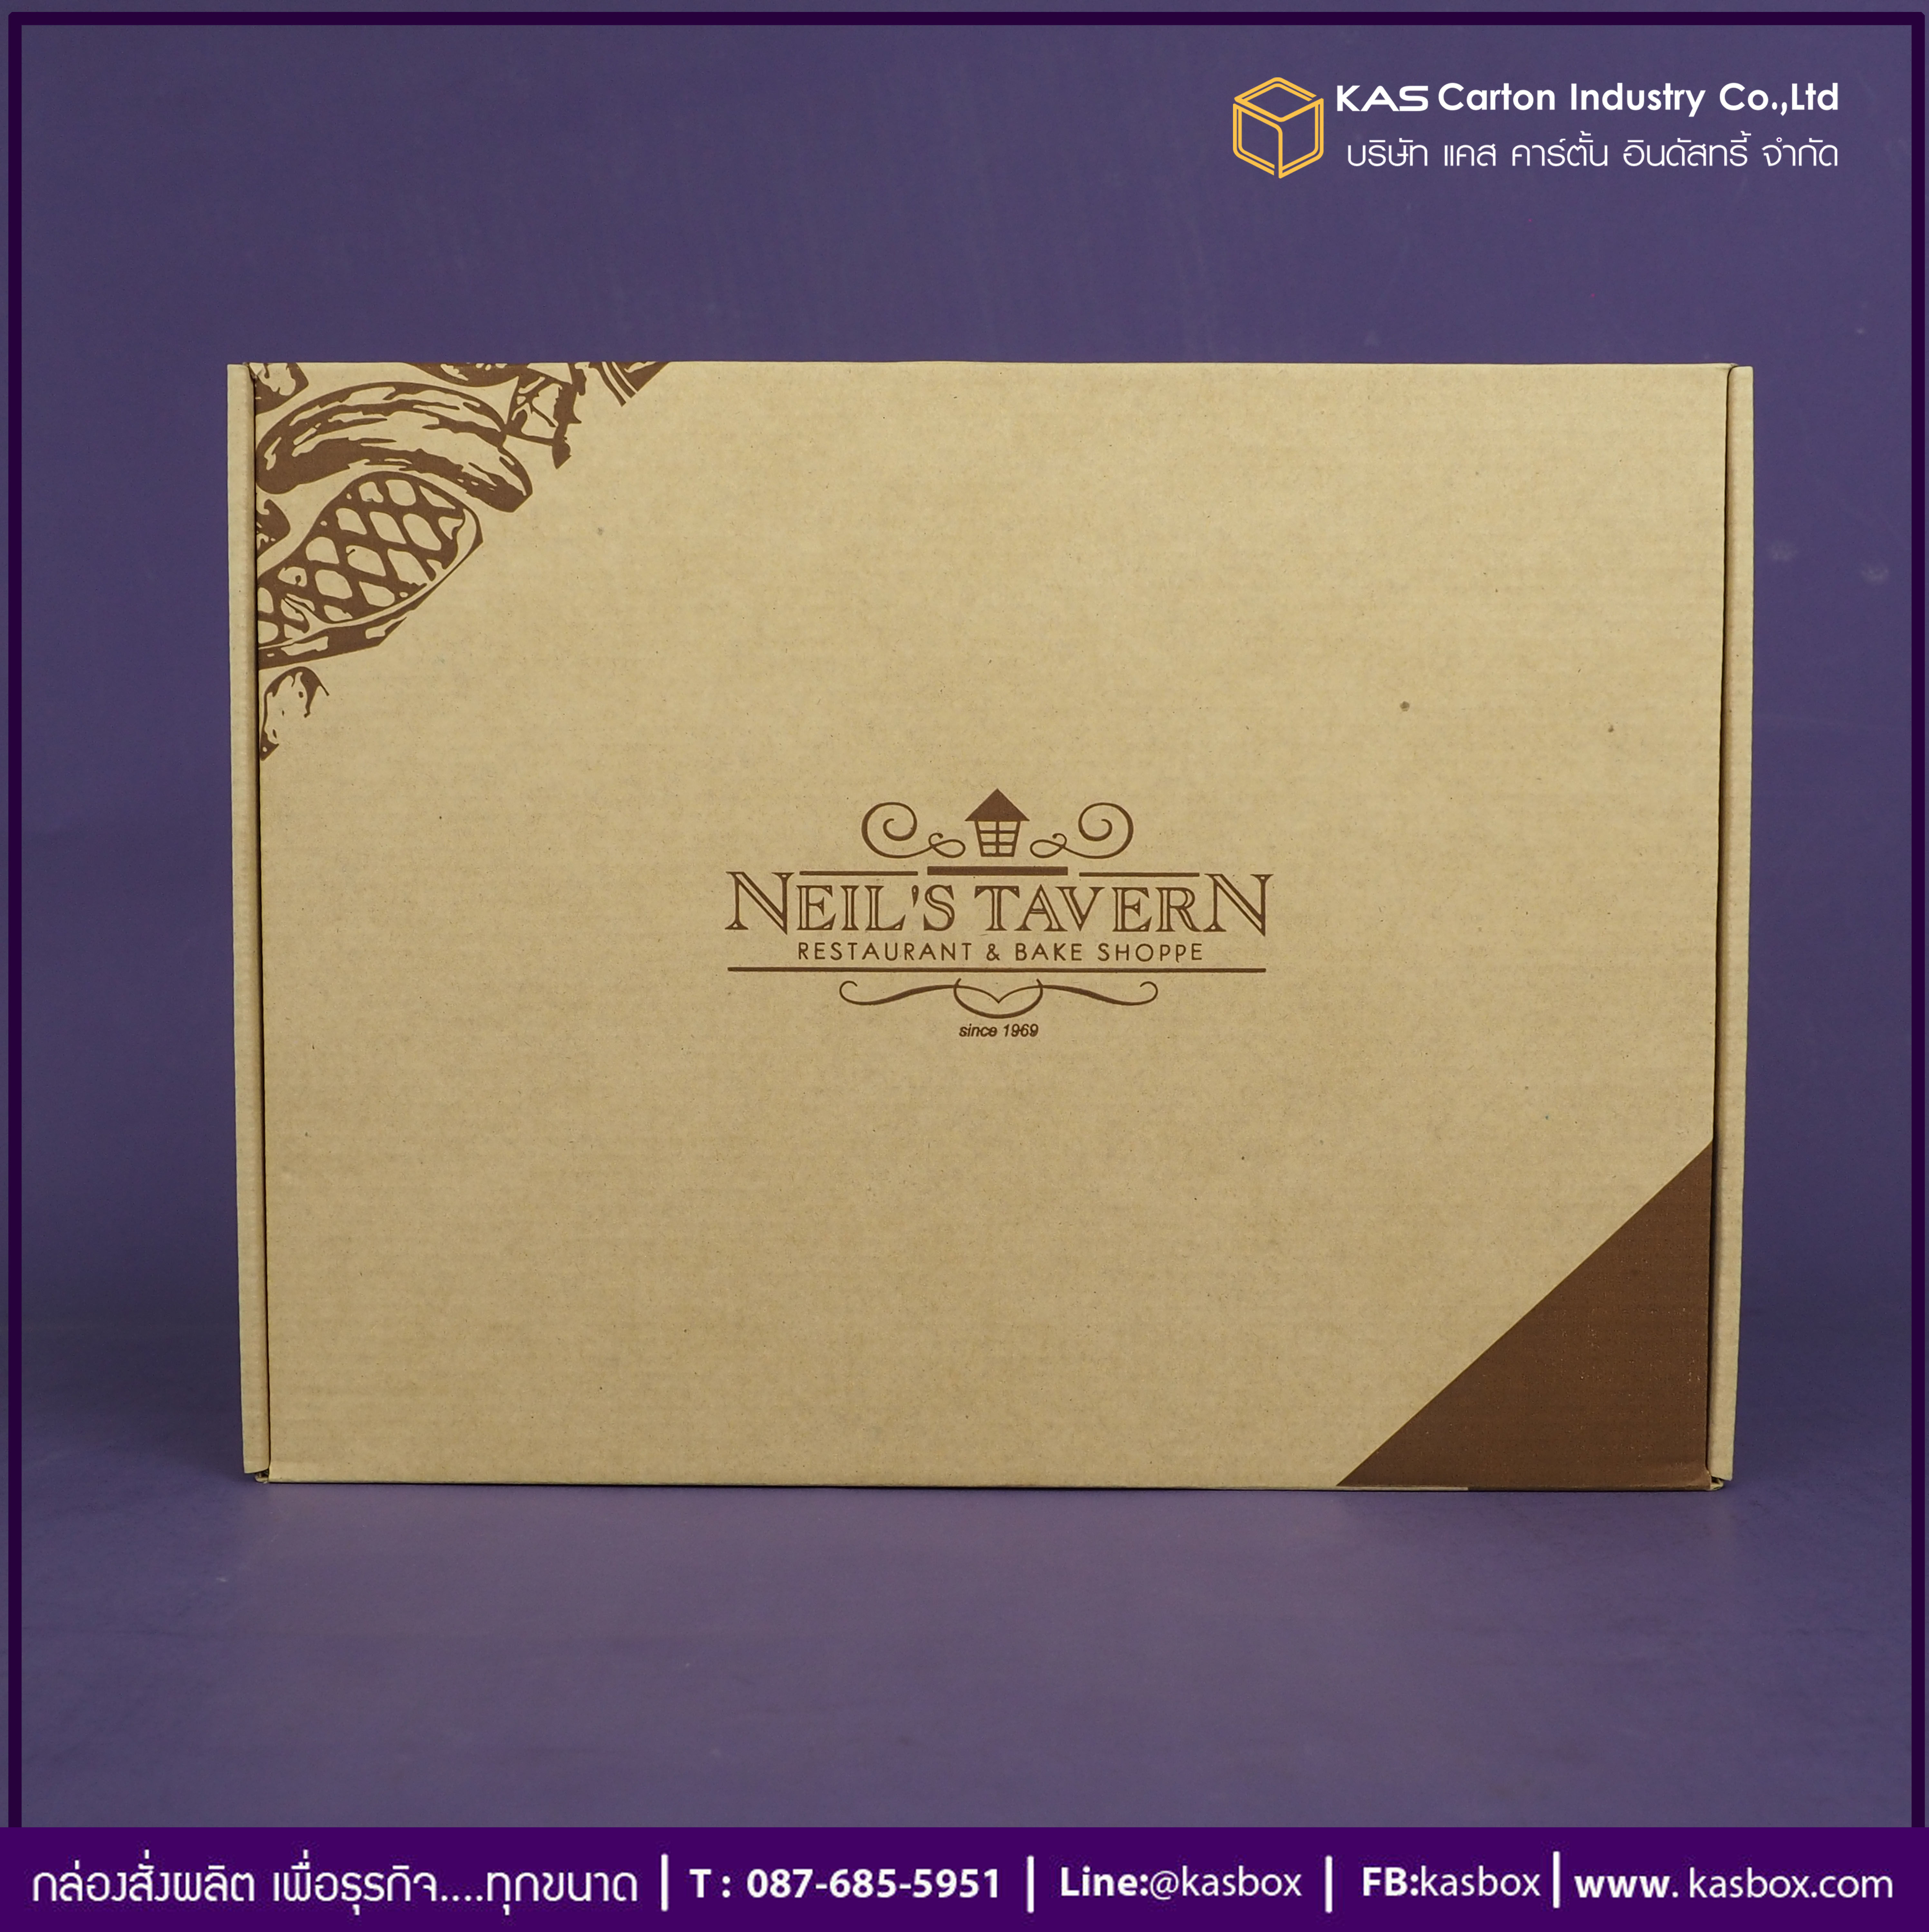 กล่องลูกฟูก สำเร็จรูป และ สั่งผลิต ตามความต้องการลูกค้า กล่องลูกฟูก SME กล่องกระดาษลูกฟูก กล่องอาหาร สเต๊กพรีเมี่ยม Neils Tavern